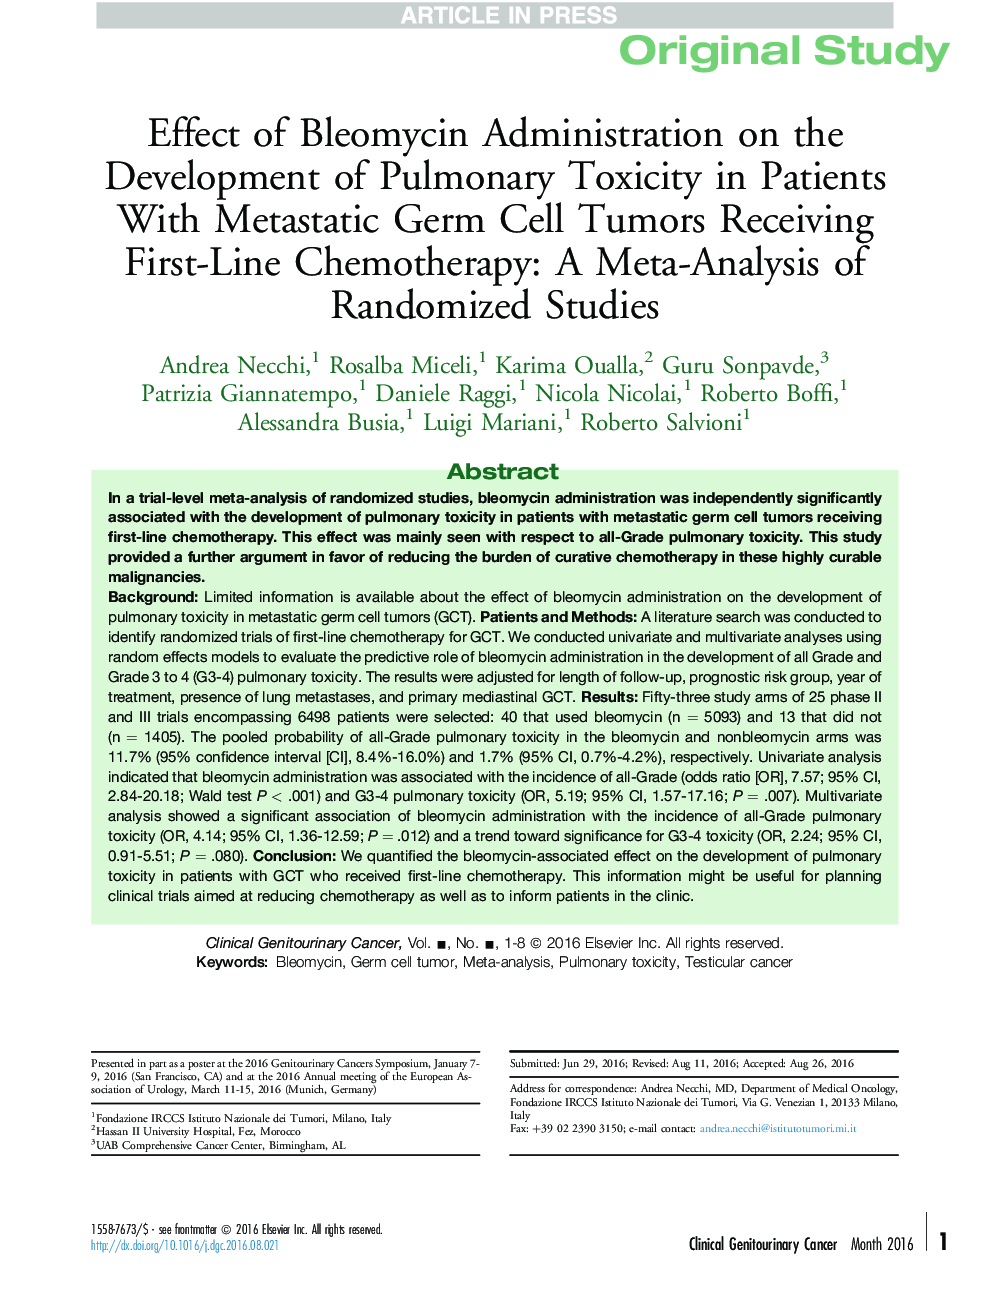 تأثیر مدیریت بلومایسین بر توسعه سمیت ریوی در بیماران مبتلا به تومورهای سلول های بنیادی متاستاتیک دریافت شیمیدرمانی درجه اول: یک متاآنالیز مطالعات تصادفی 